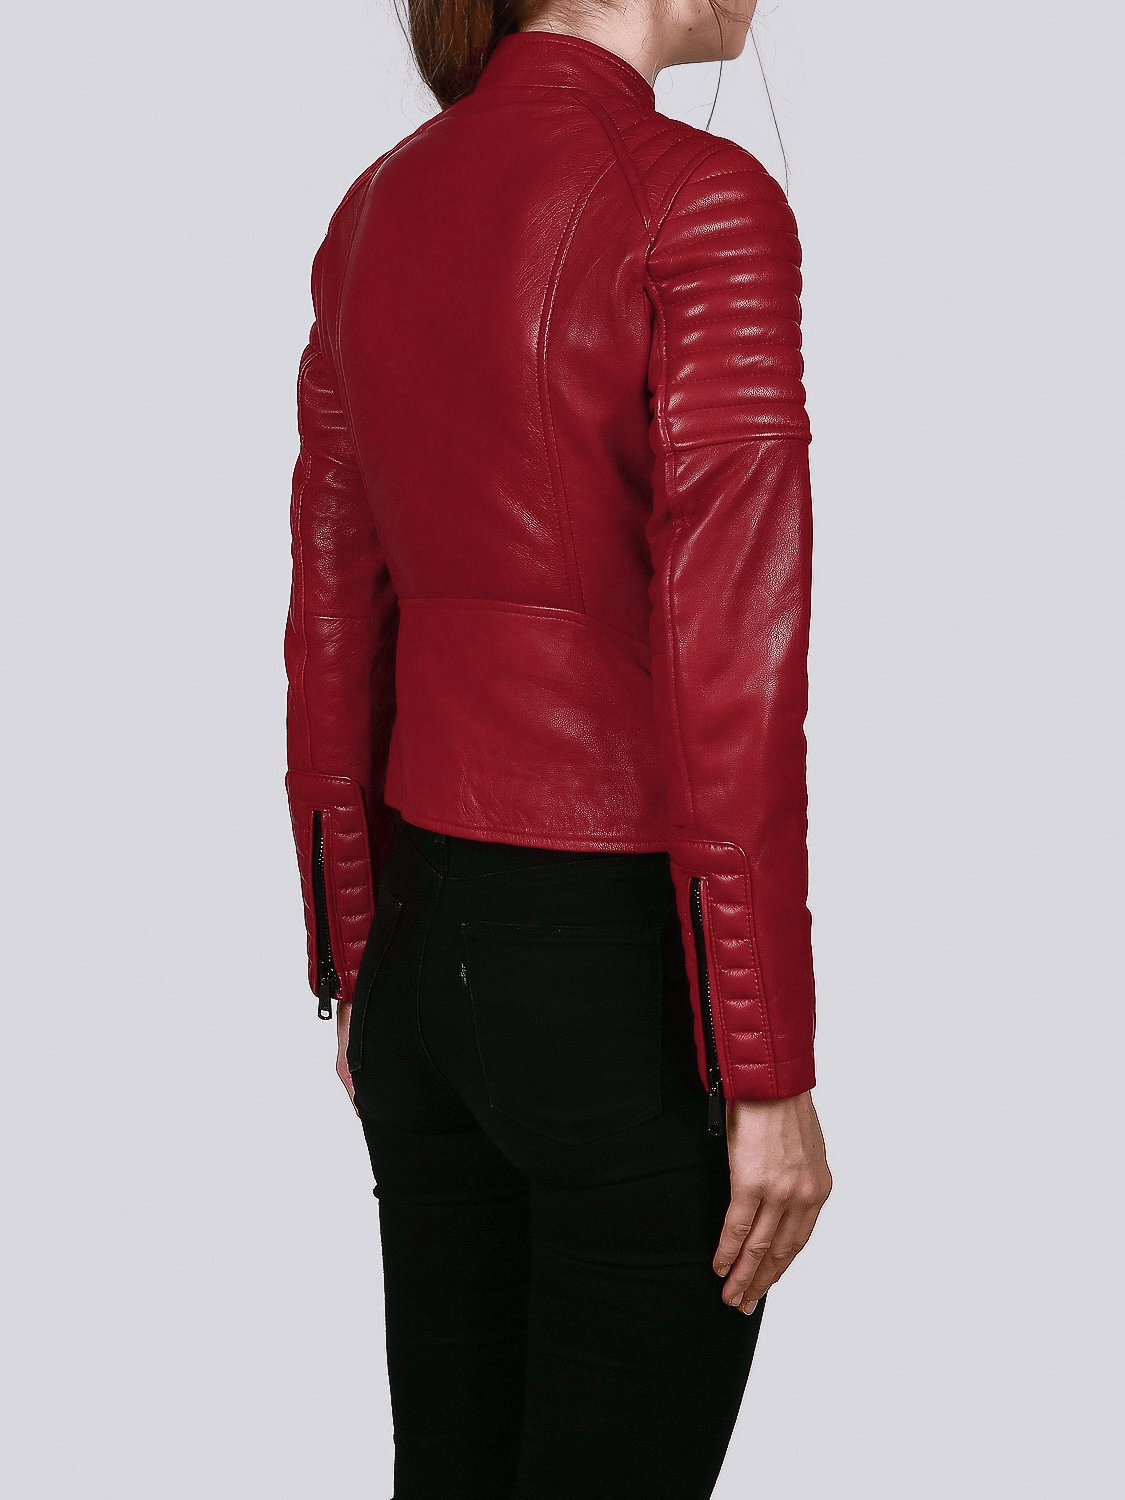 Ella Red Biker Leather Jacket